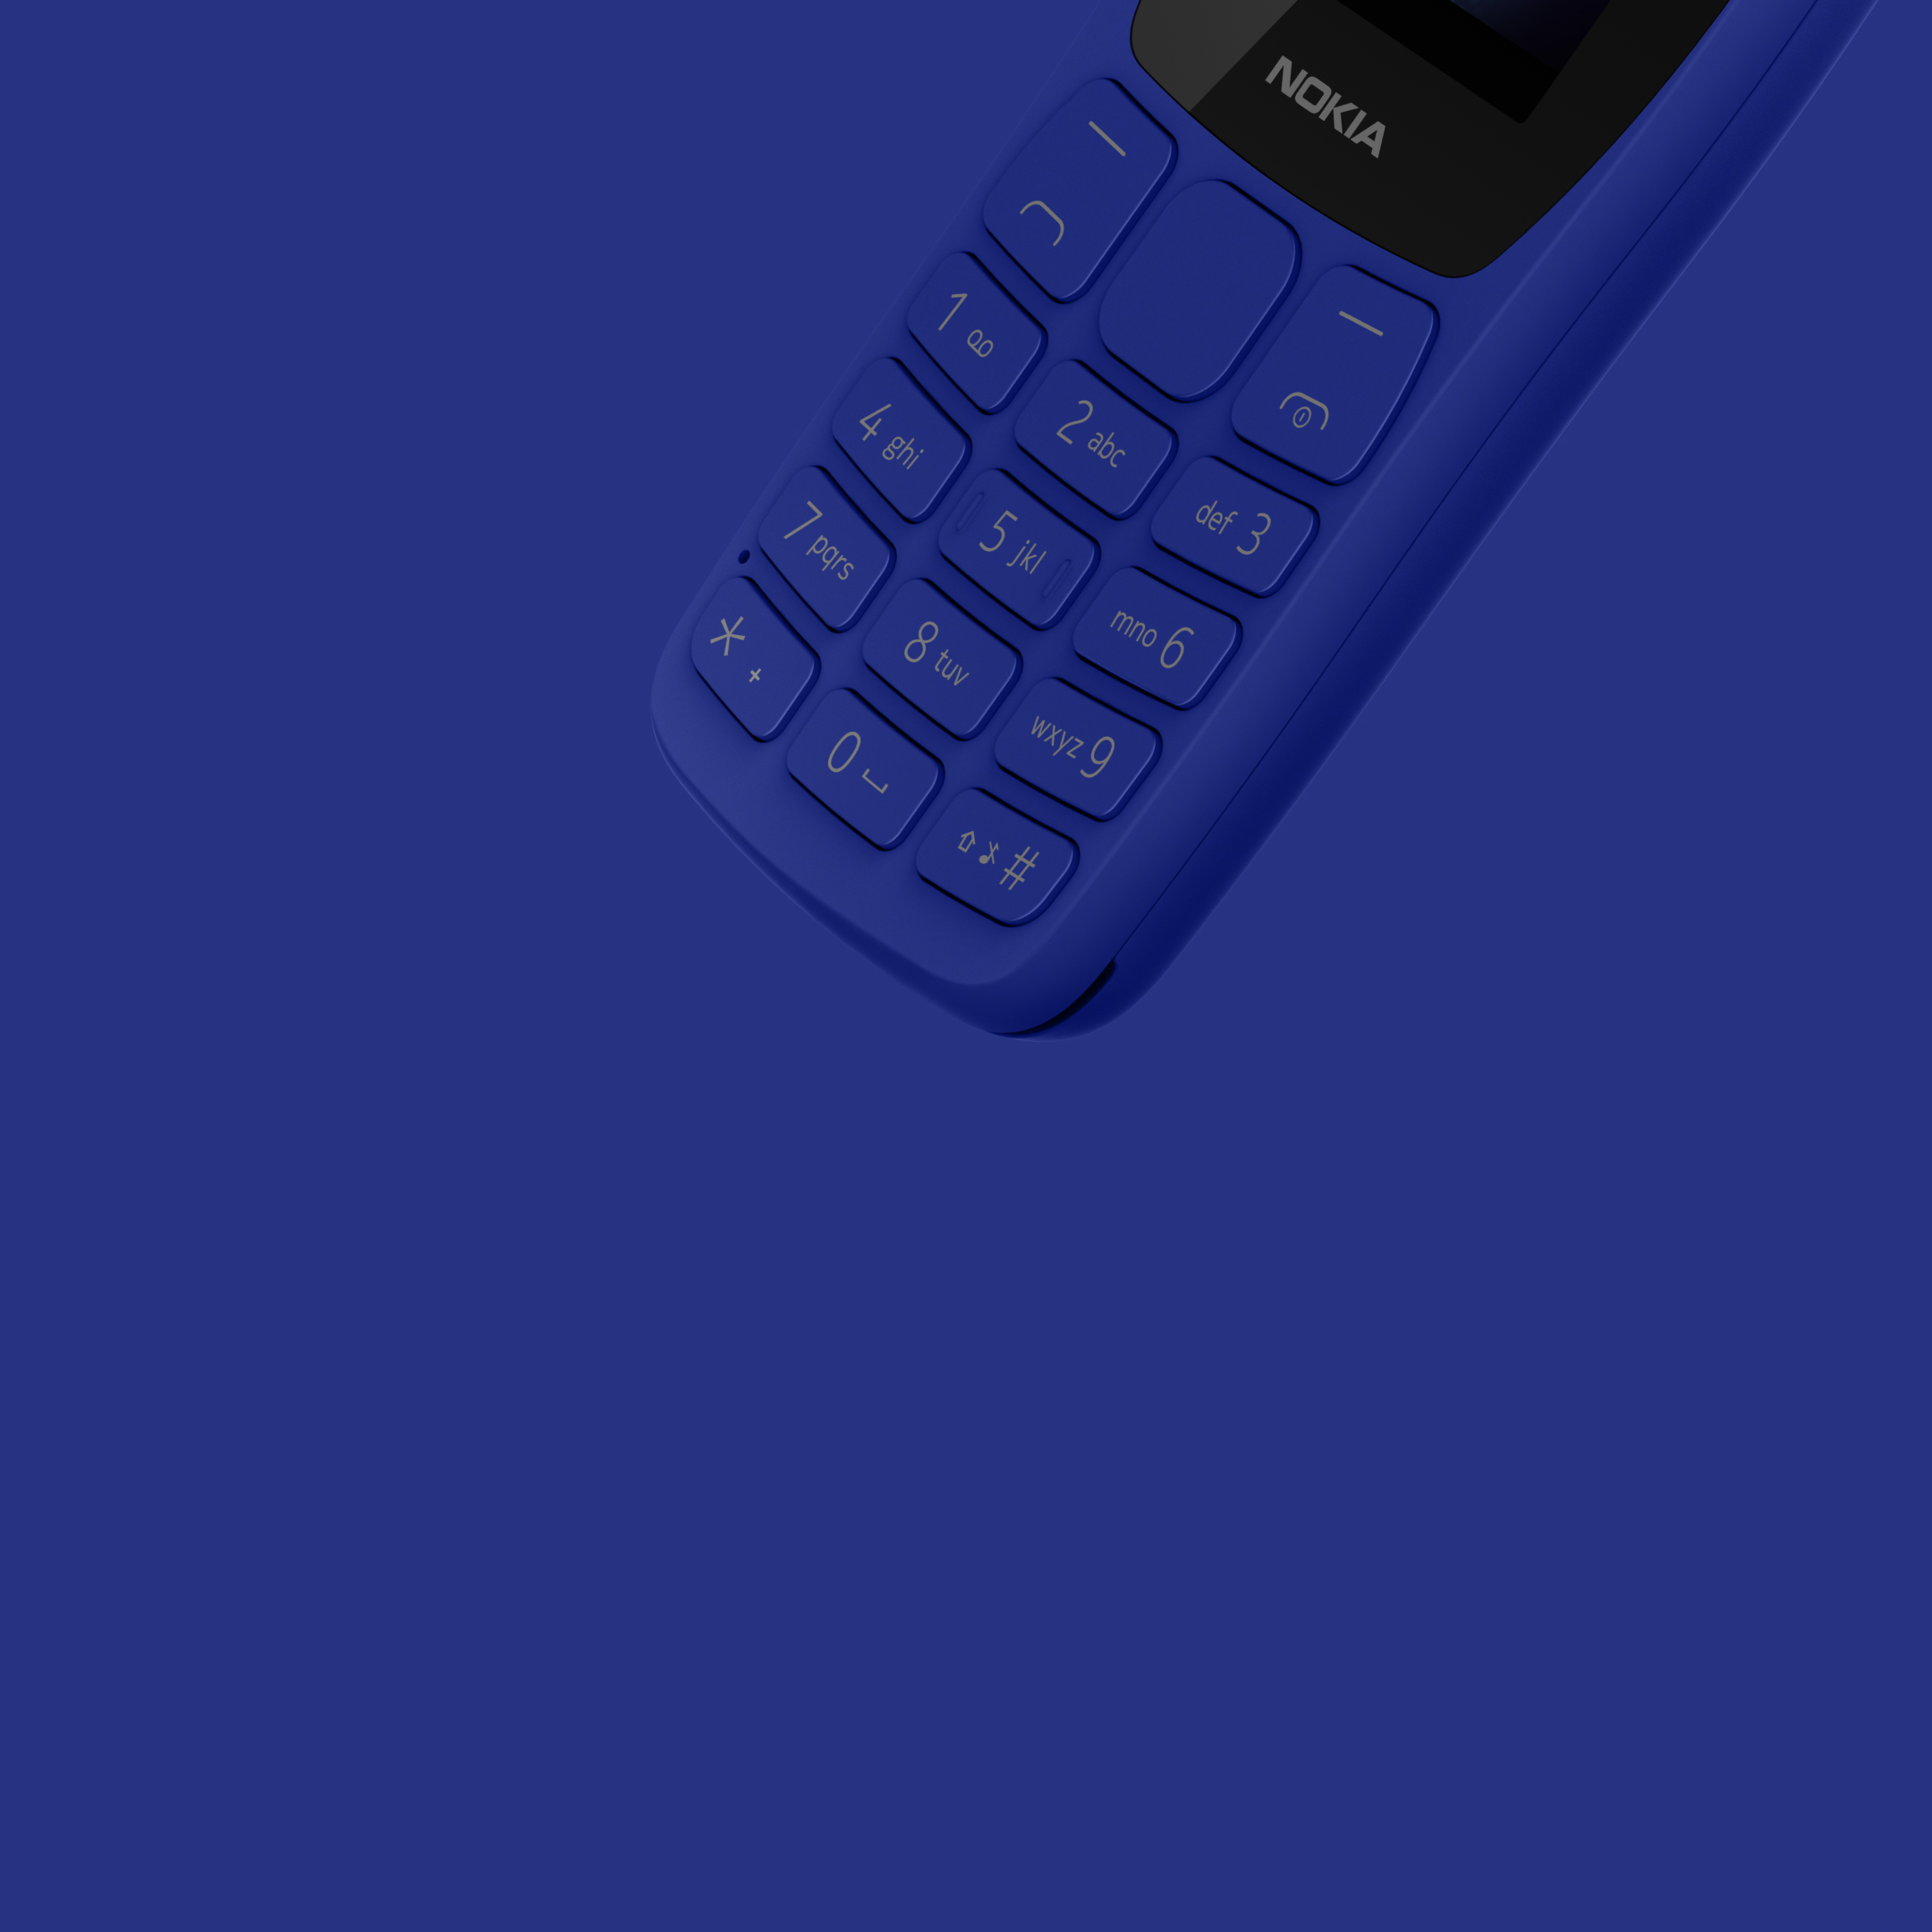 Nokia Nk 105 Dual Sim- African Edition - FoneXpress